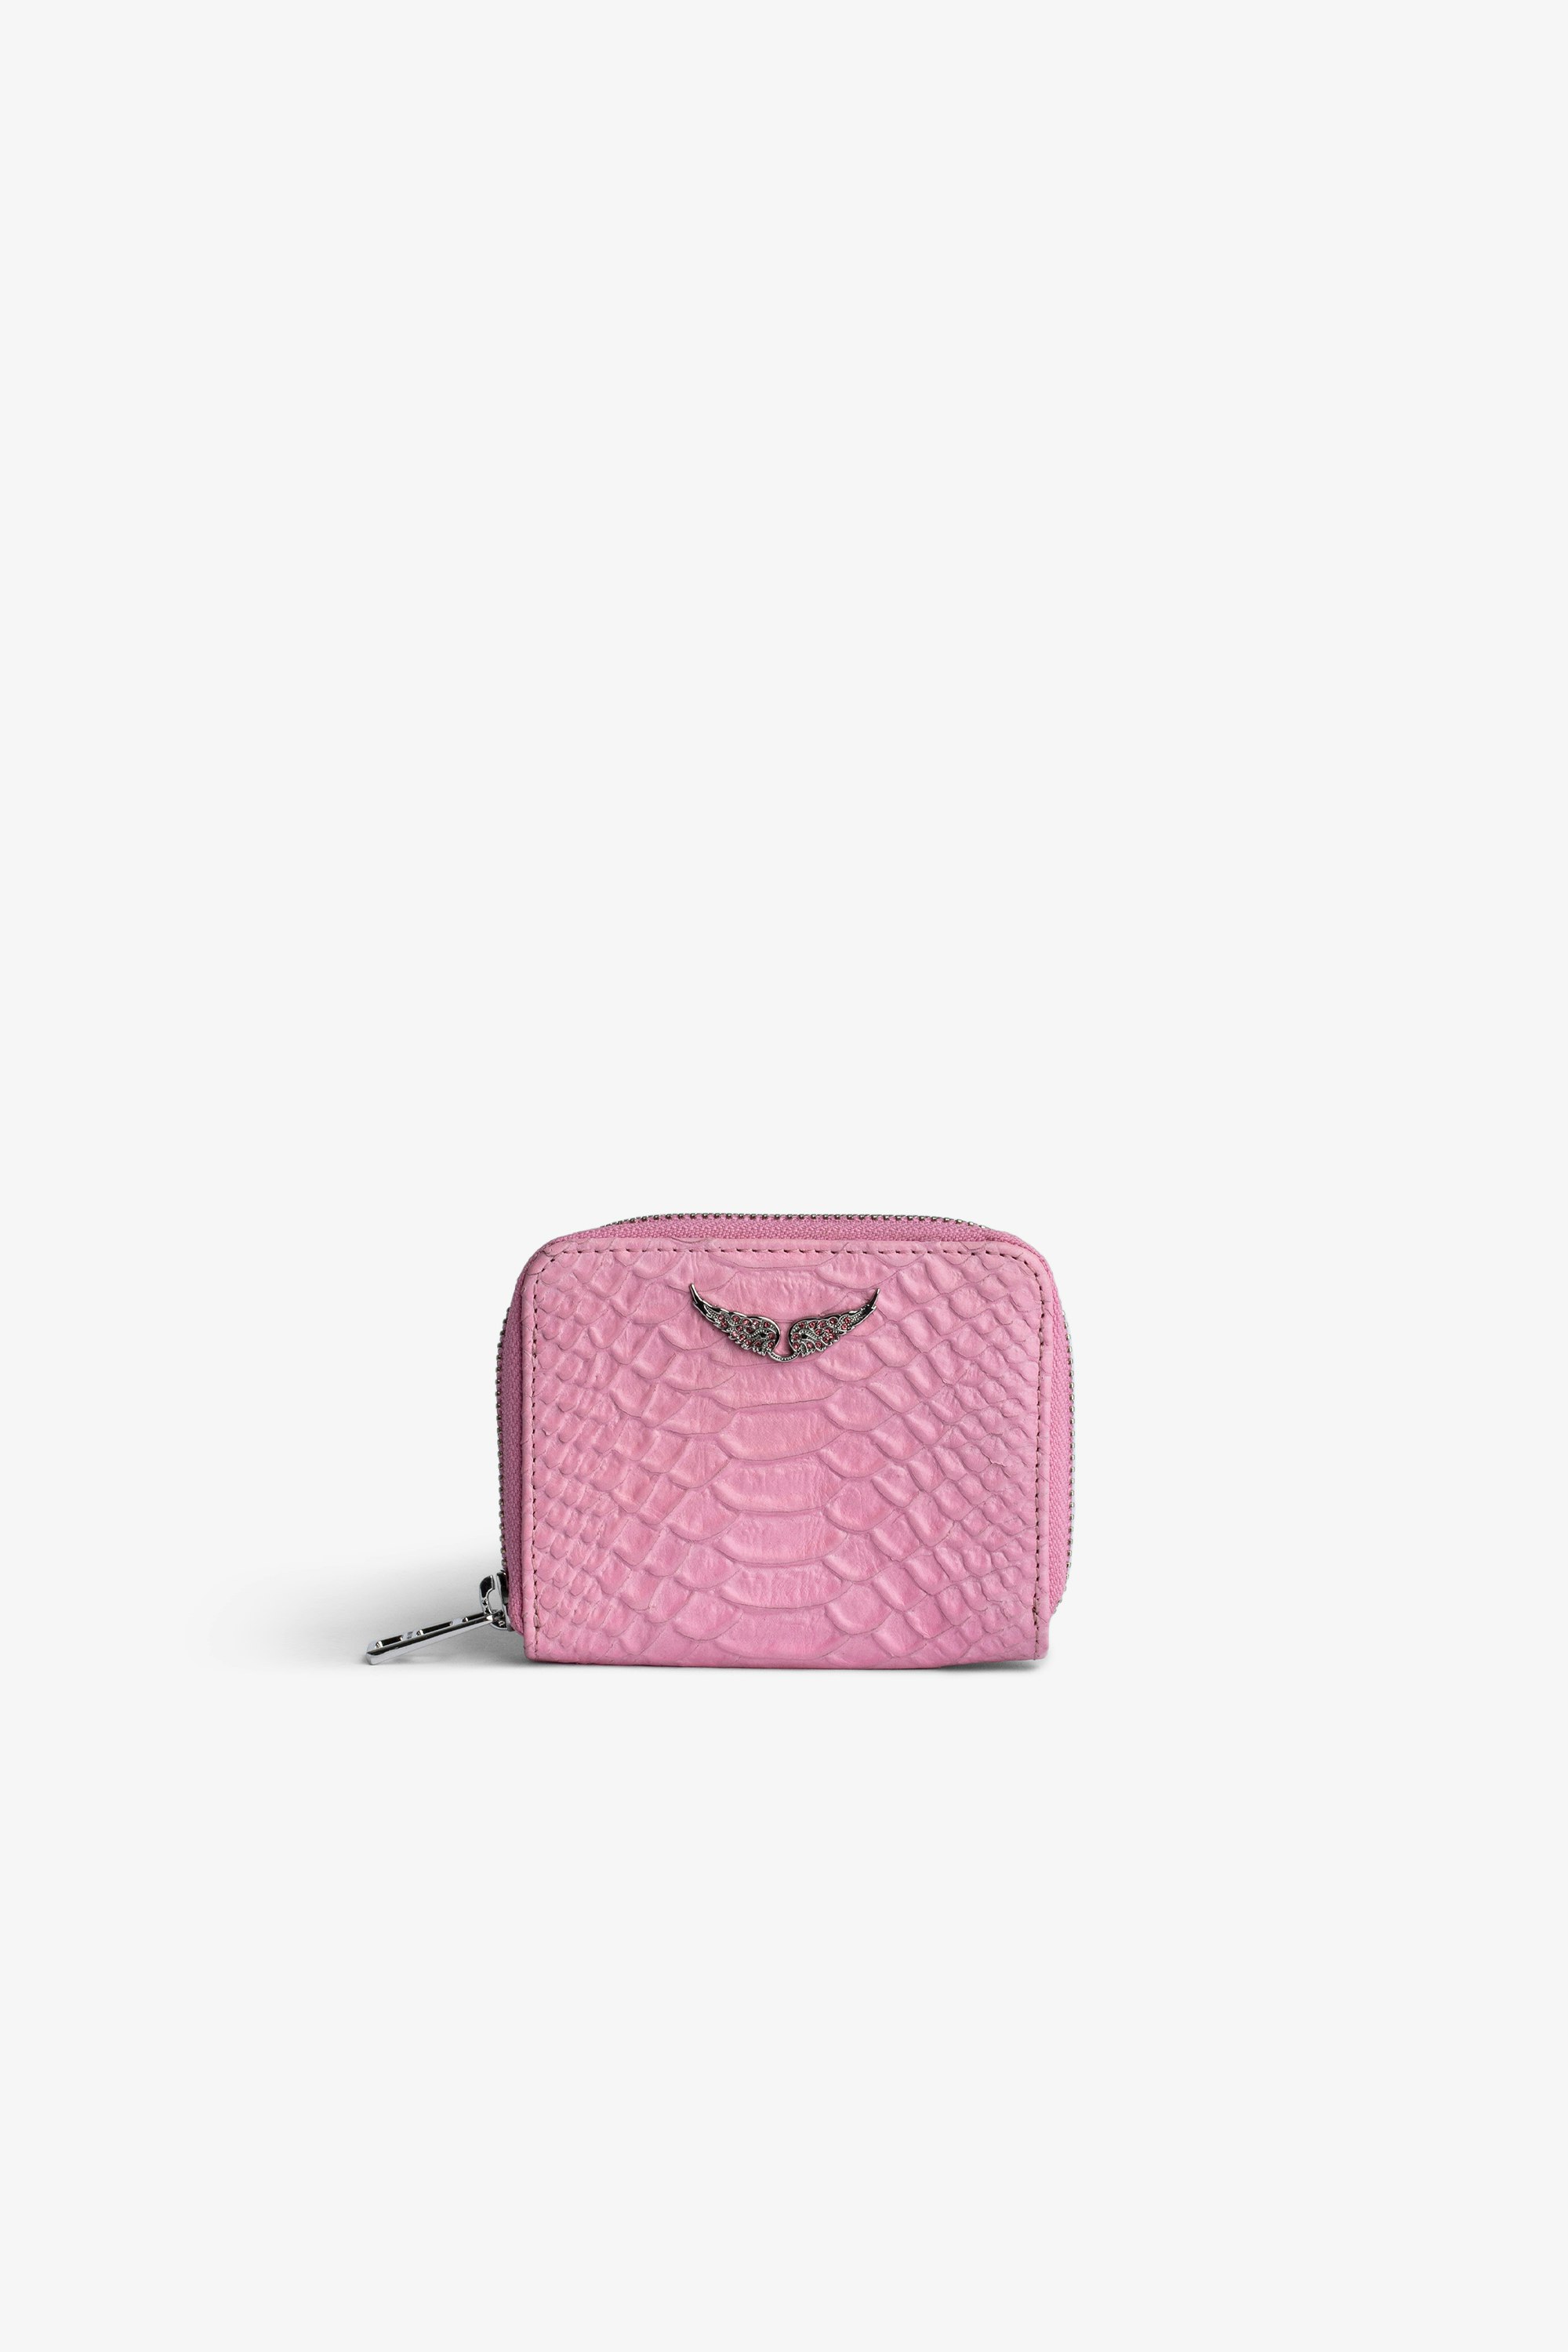 Monedero Mini ZV Savage Monedero de piel rosa con efecto de serpiente para mujer